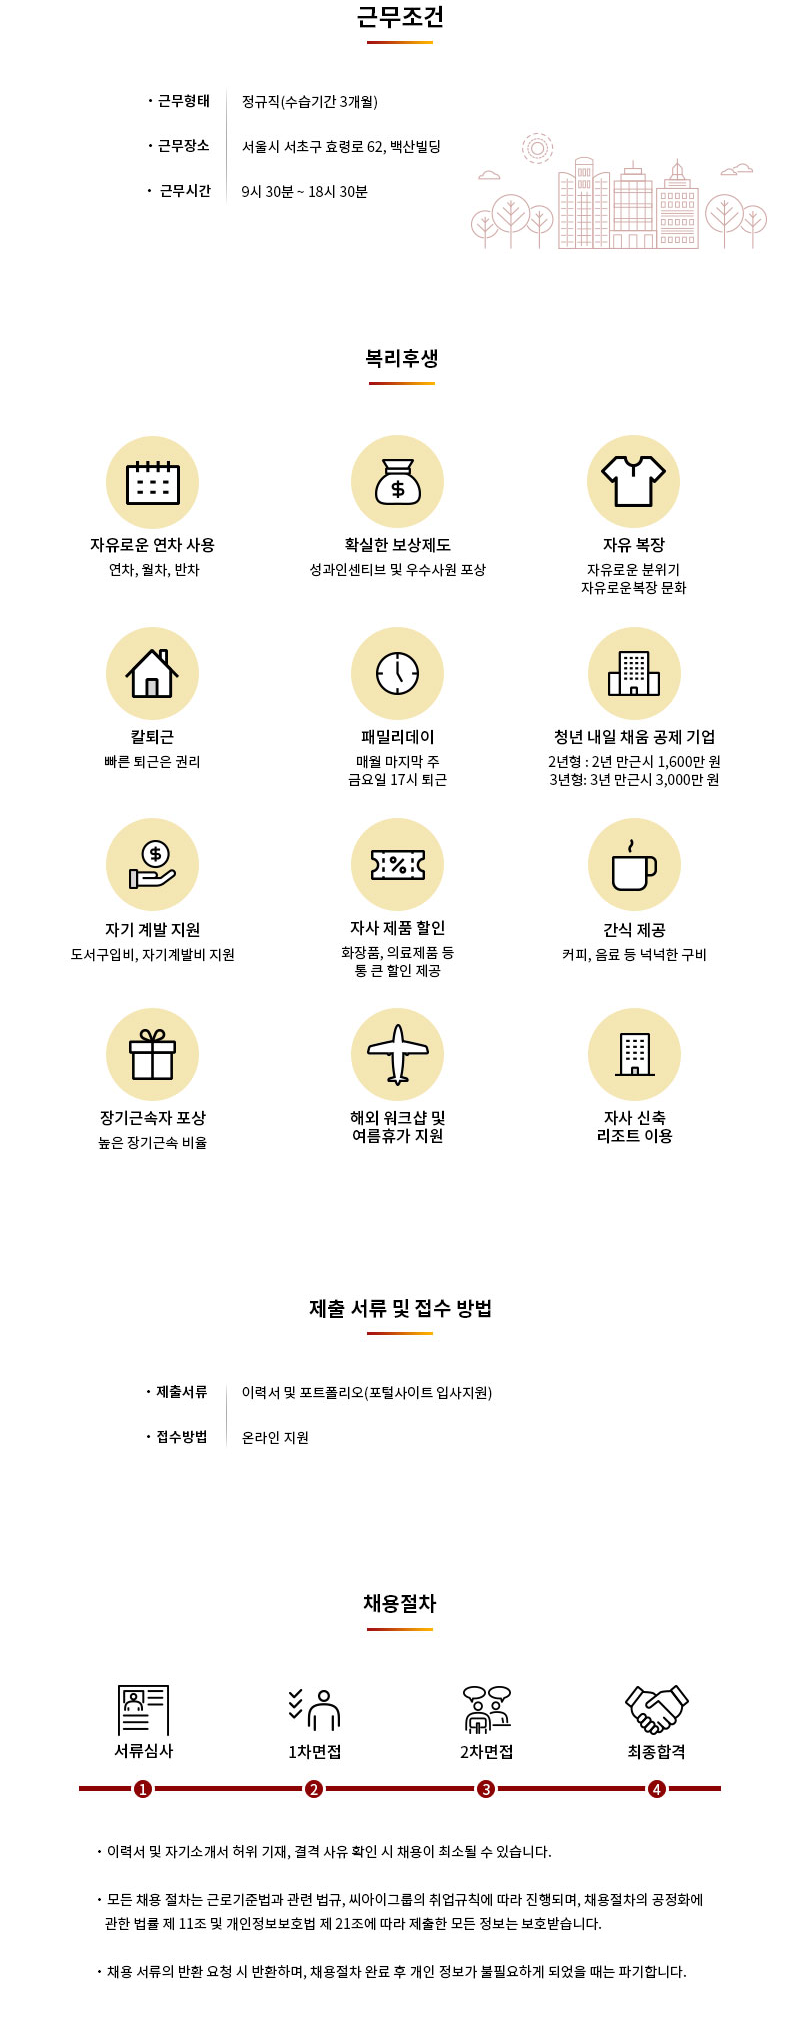 씨아이그룹 각 부분별 신입/경력직 채용